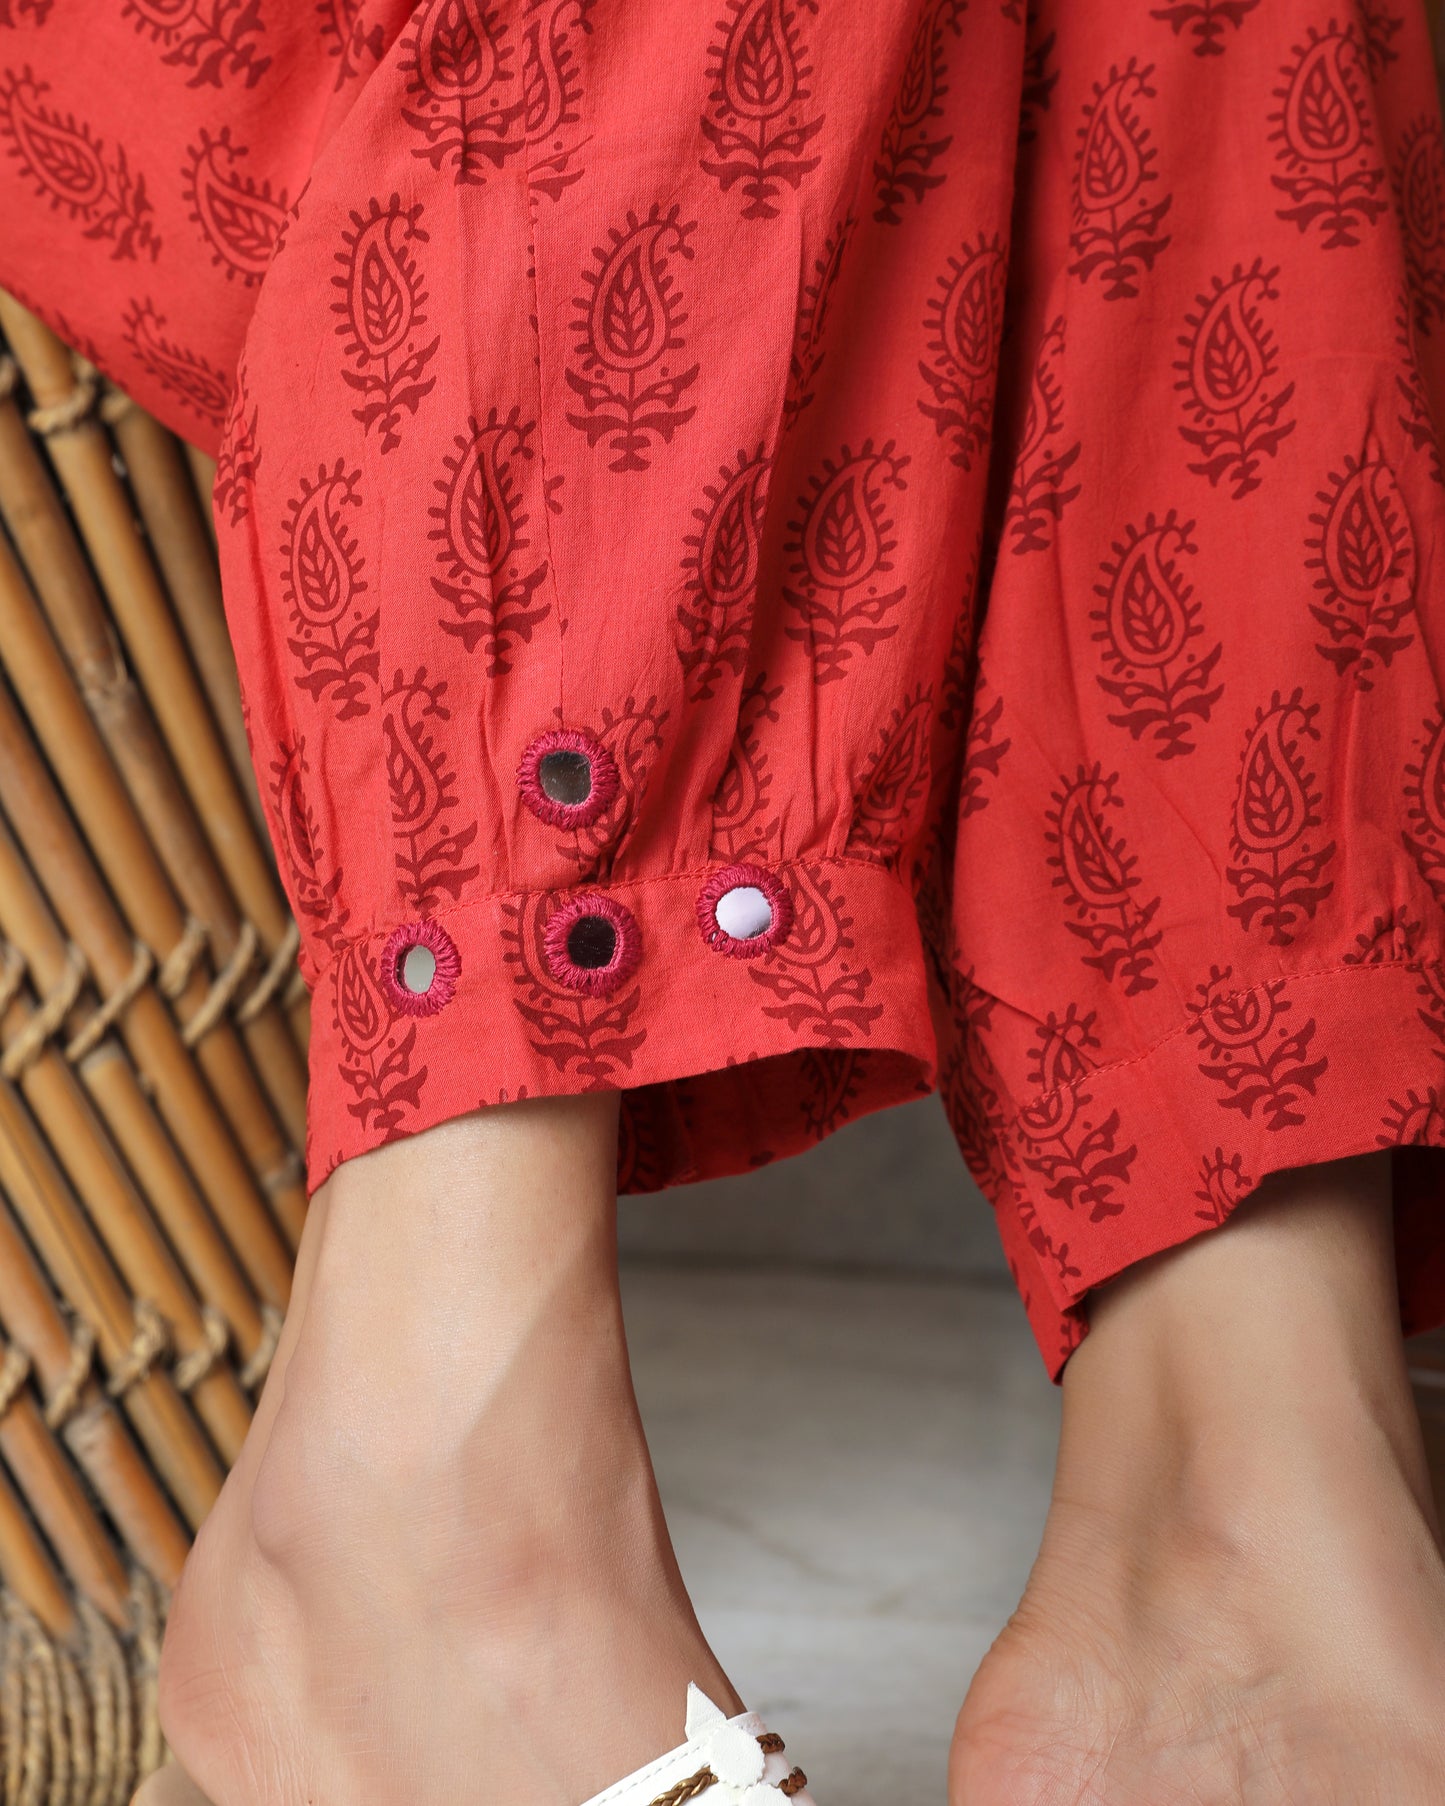 hop Bottomwear: Red Bagh print Salwar online at bebaakstudio.com